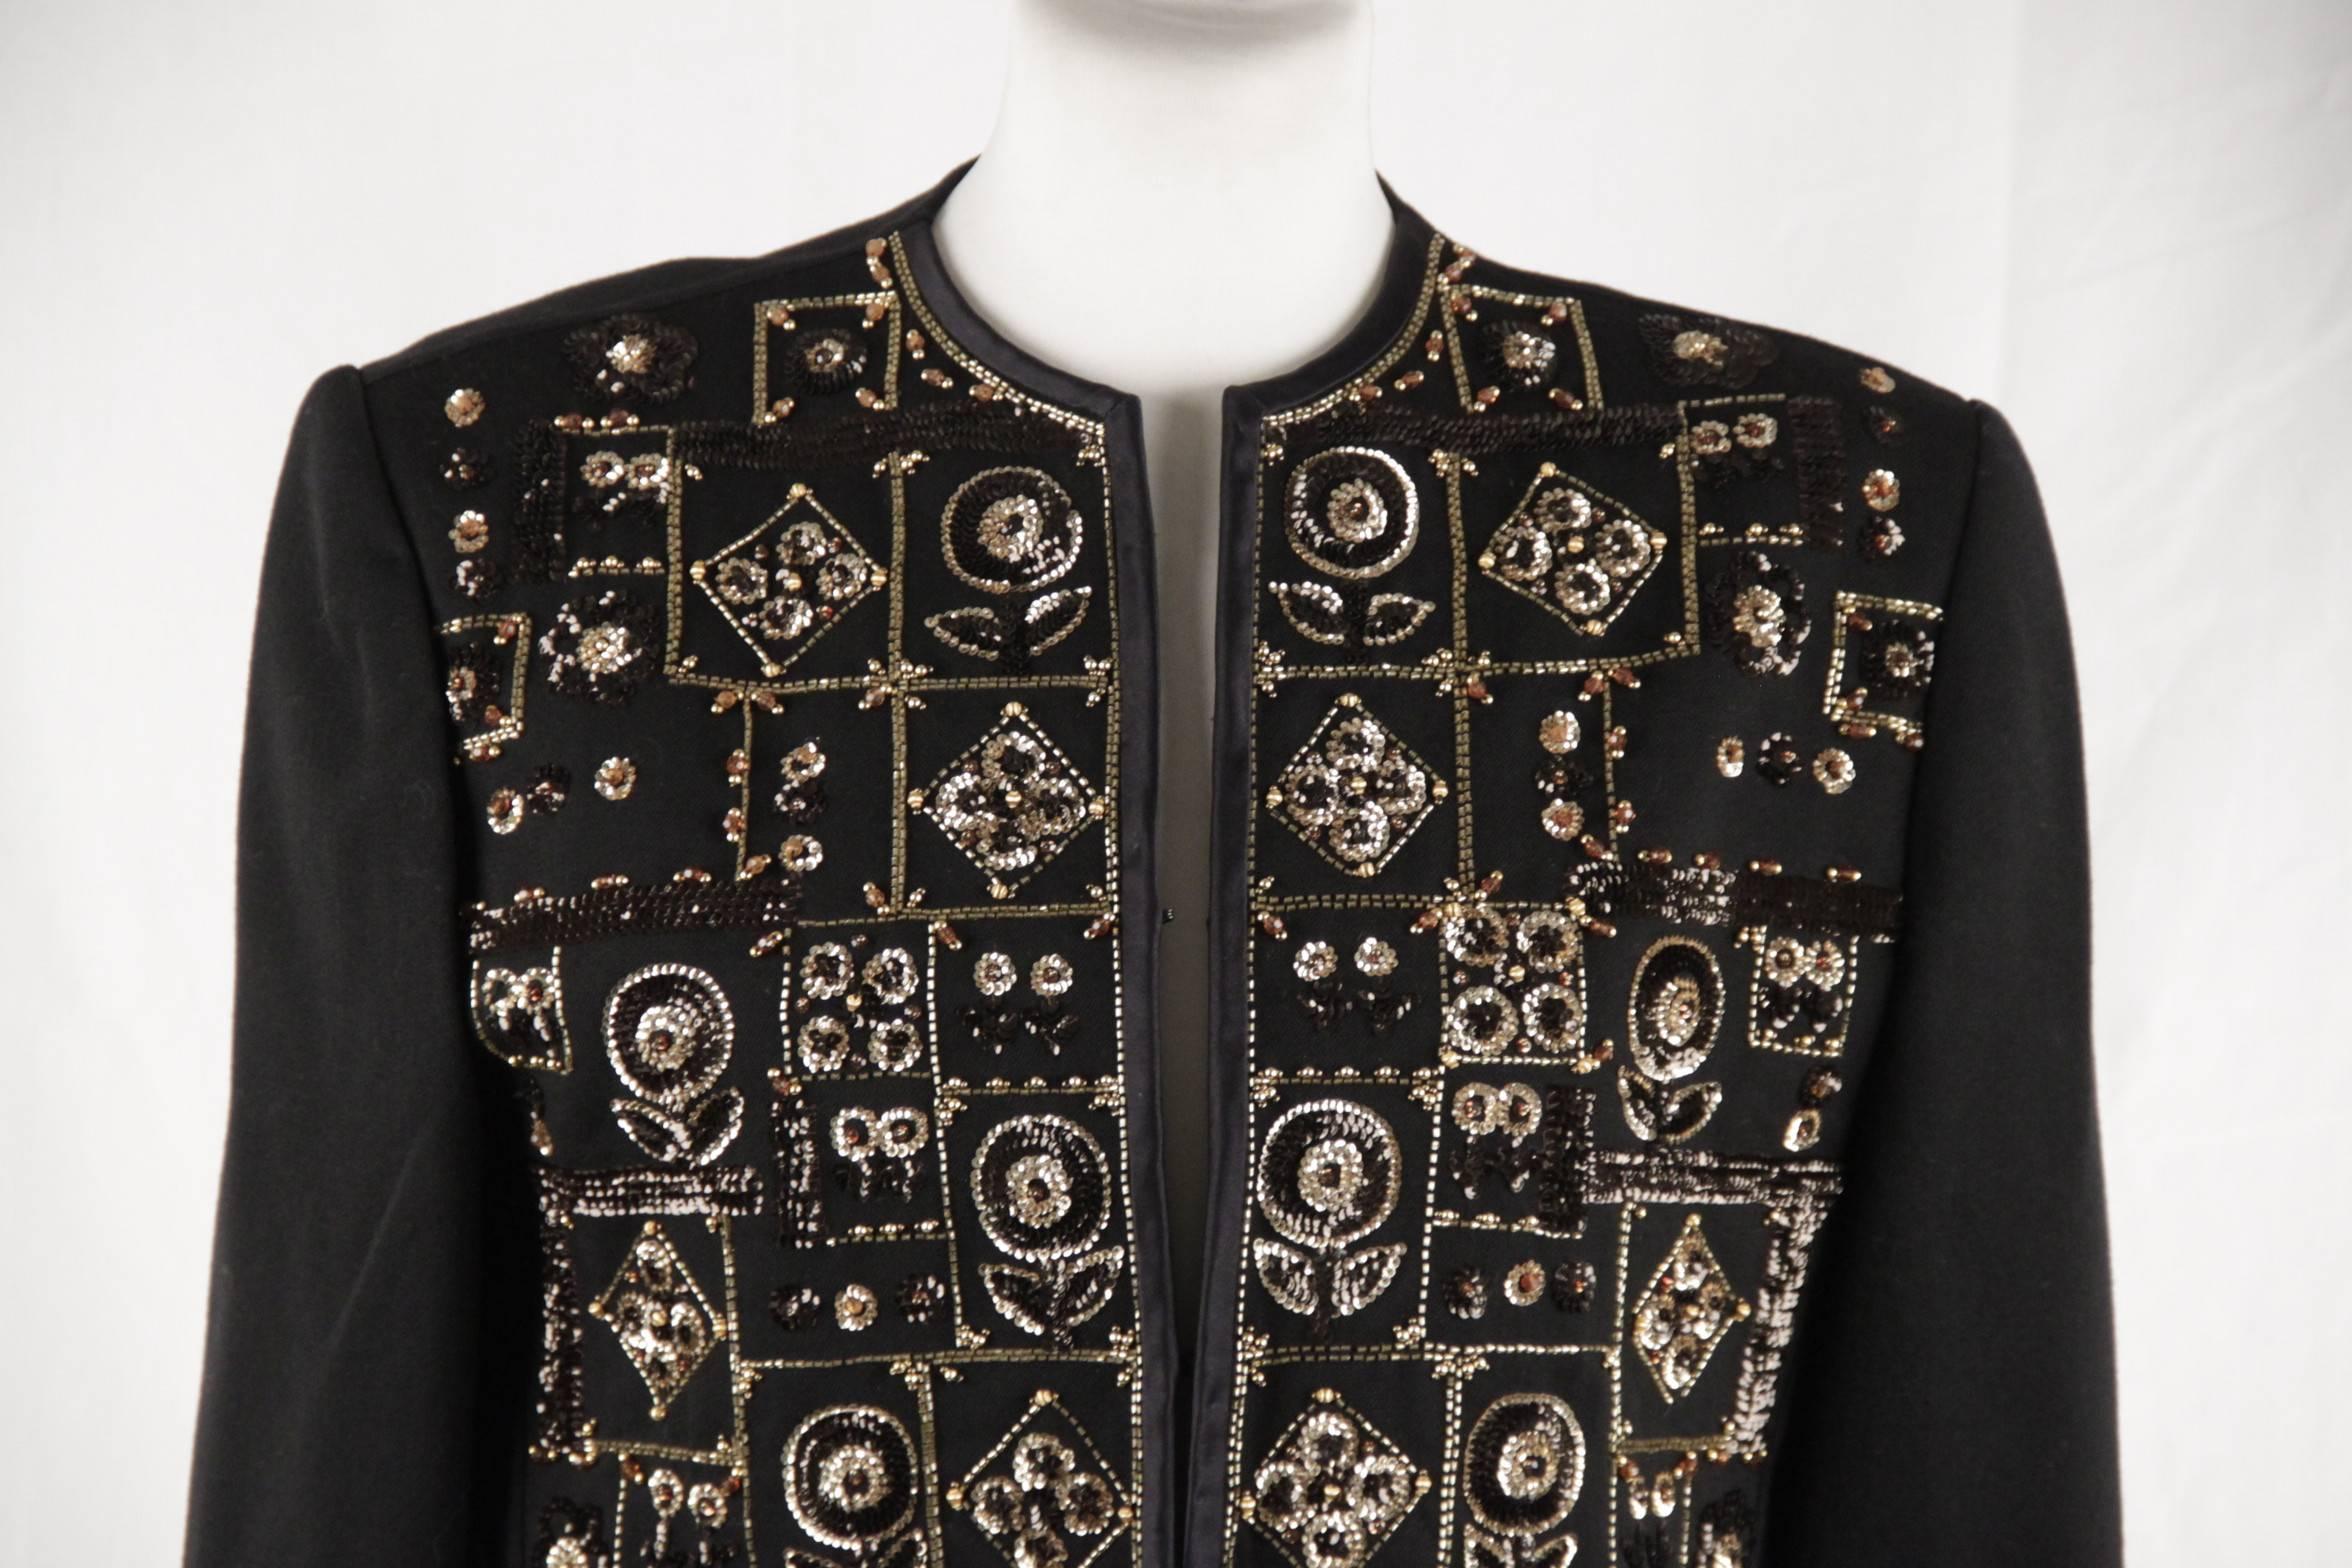 Women's ANDRE LAUG Vintage Black Embellished EVENING JACKET Beads & Sequins